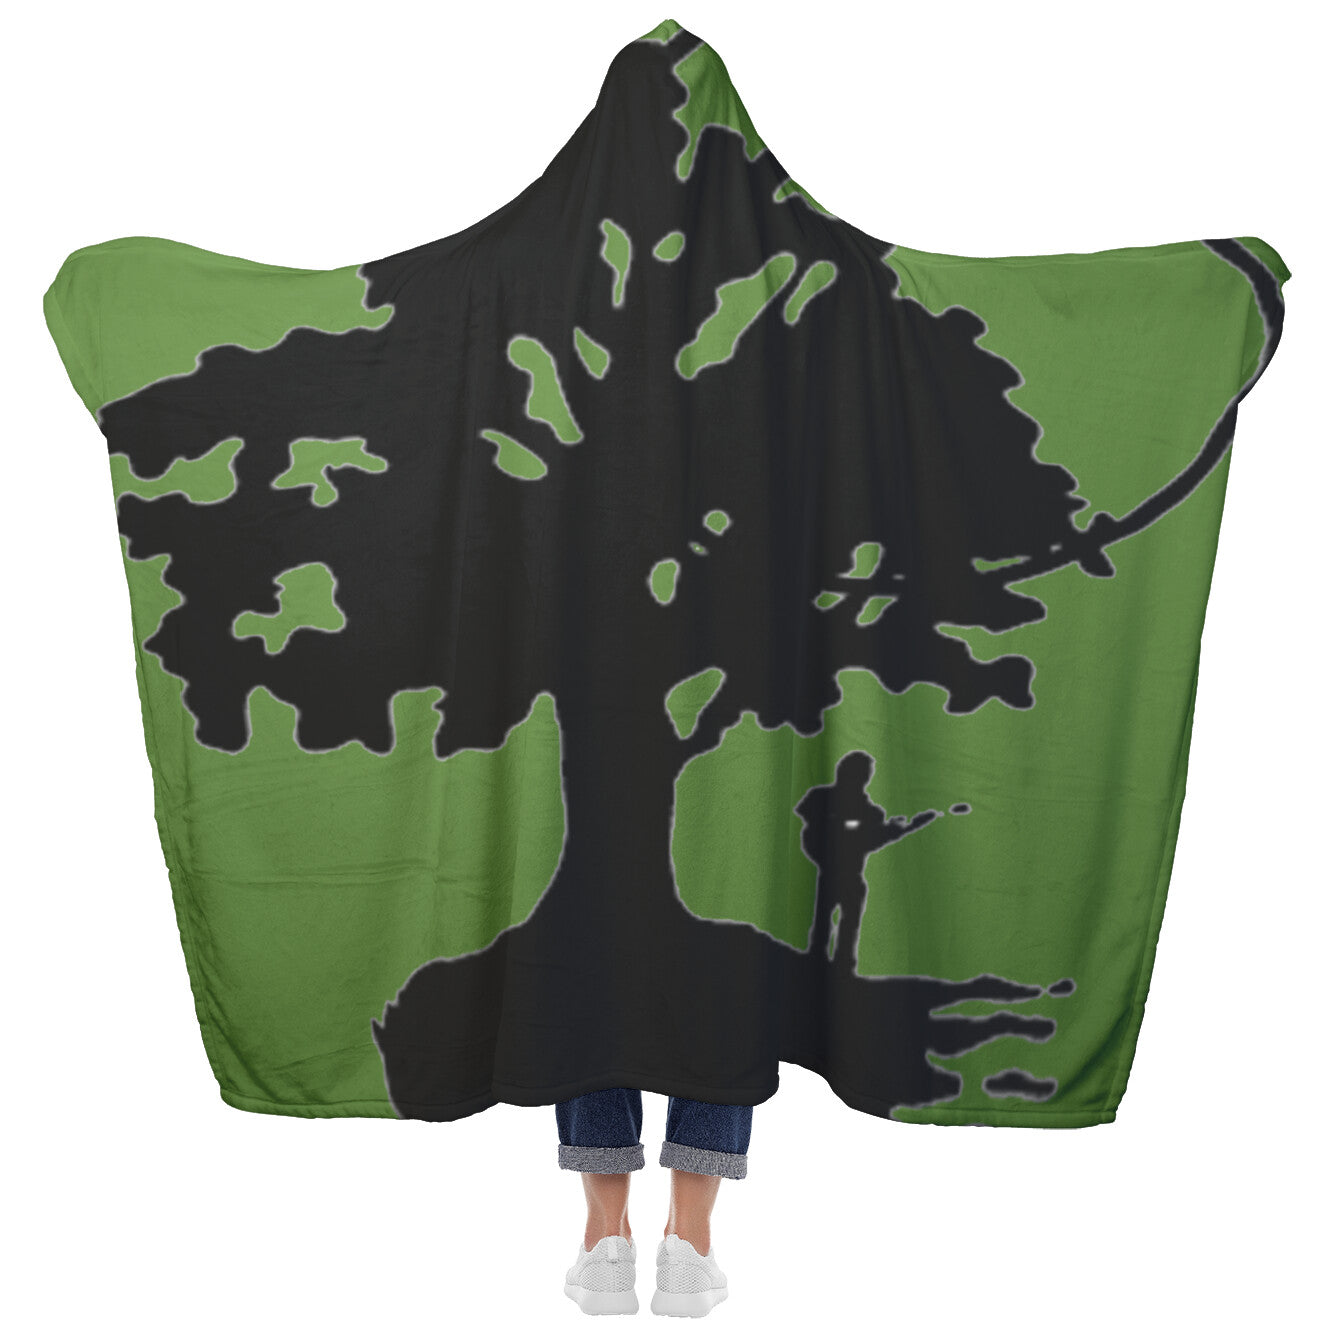 Summerfolk Tree Logo Hooded Blanket (Green - online only)